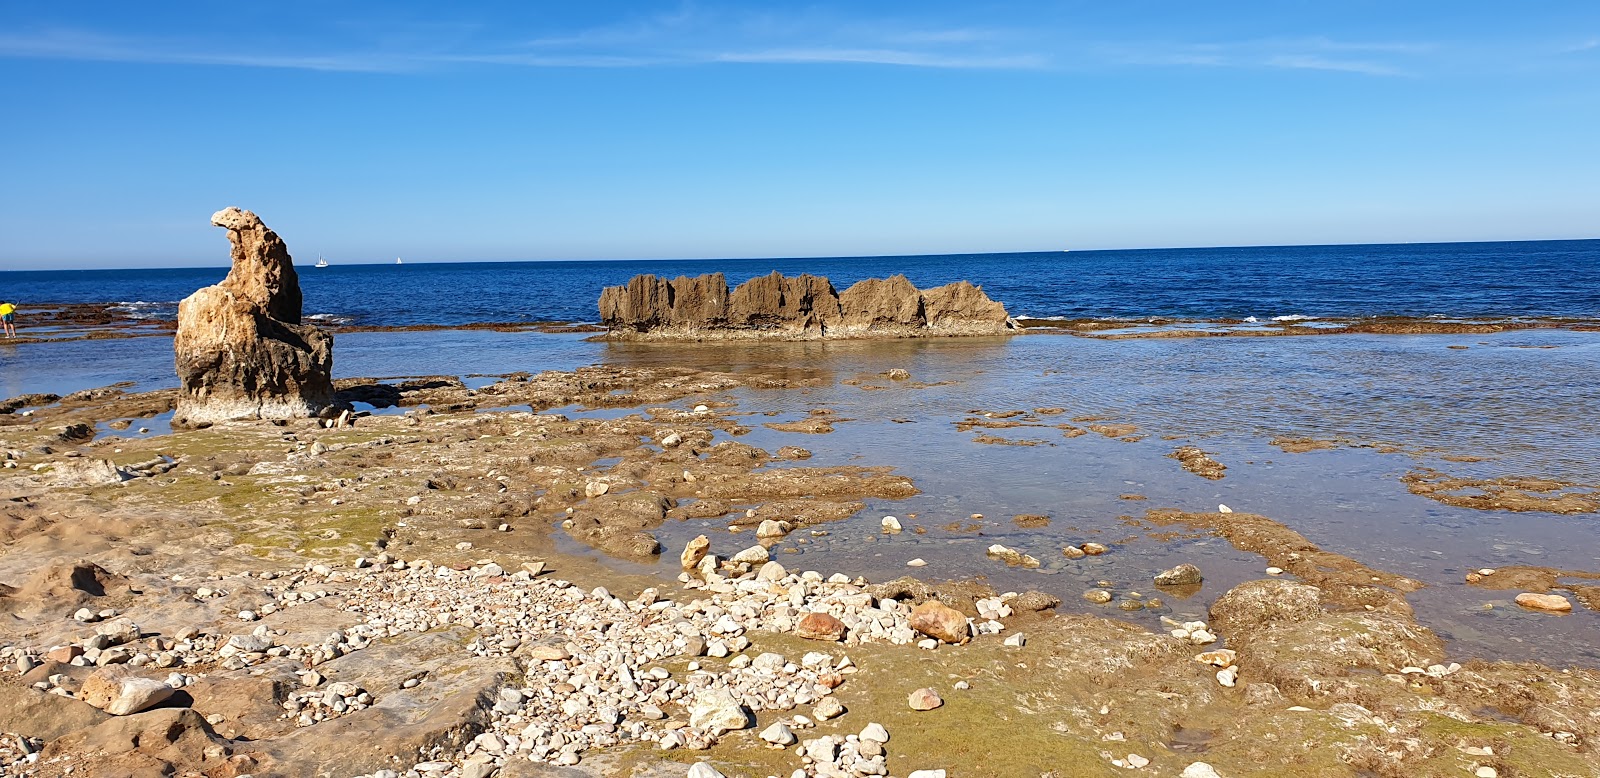 Fotografija Playa les rotes denia z modra voda površino